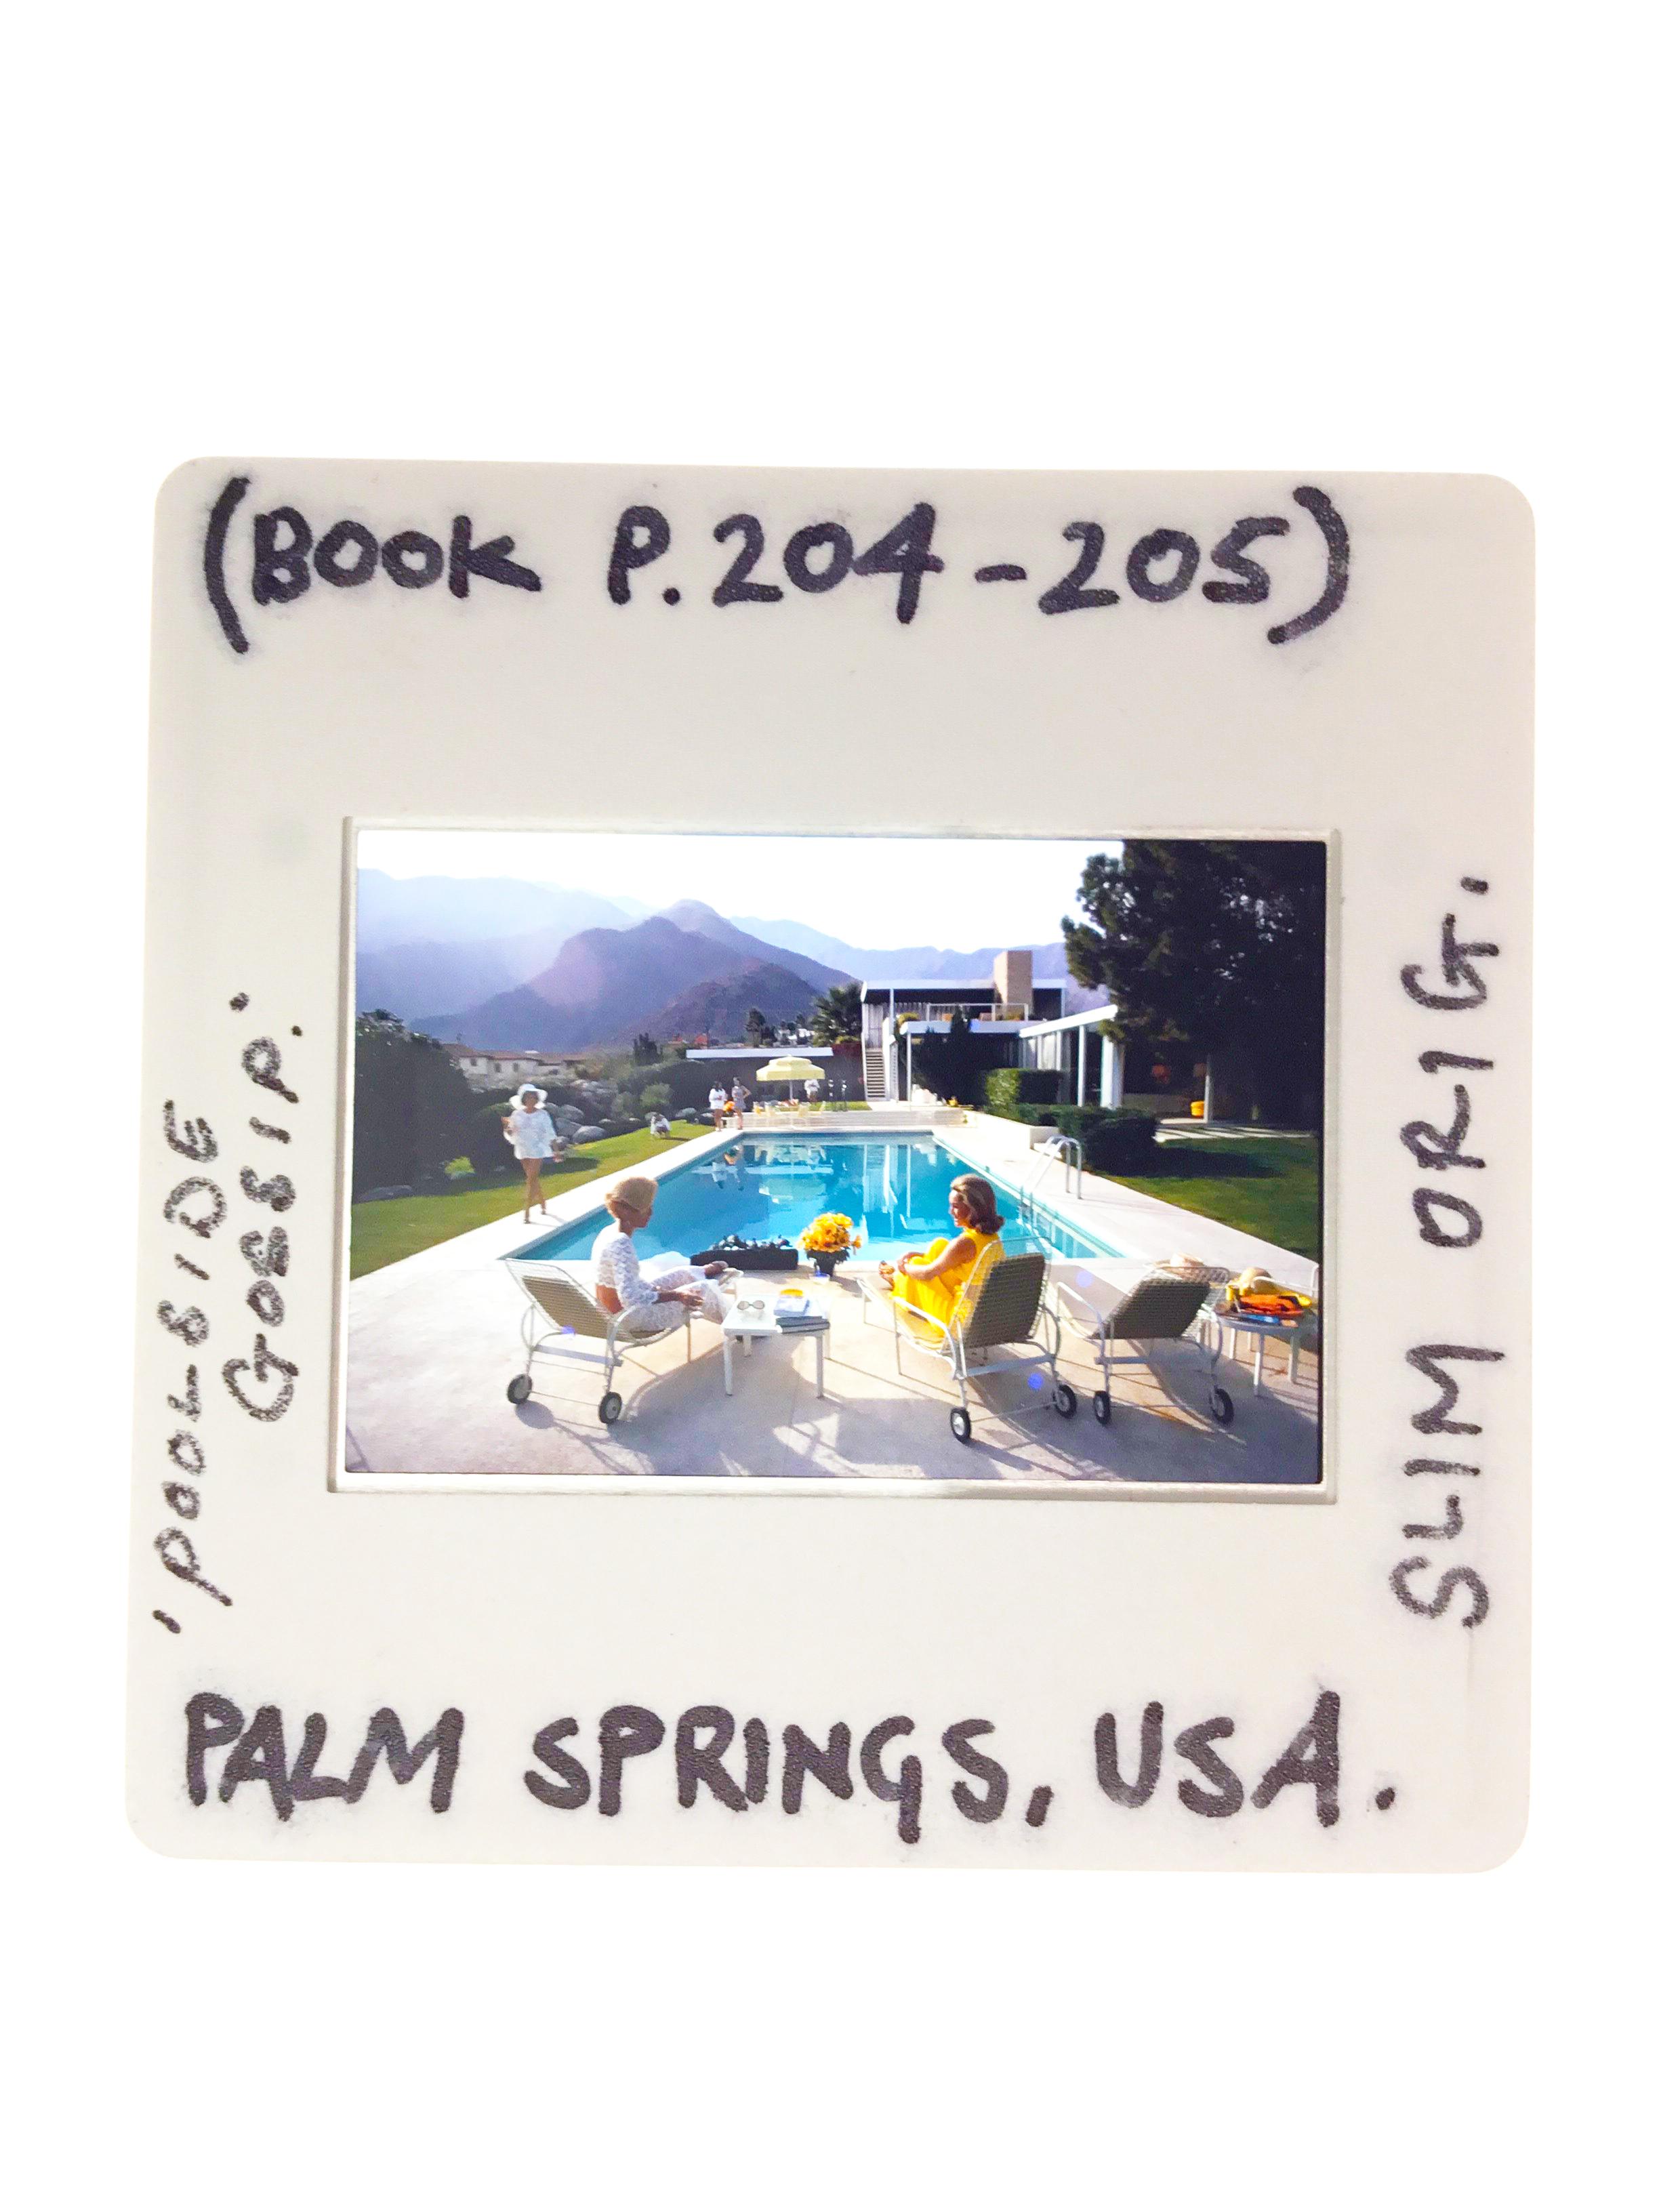 Slim Aarons - Nice pool - Estate Stamped For Sale 1